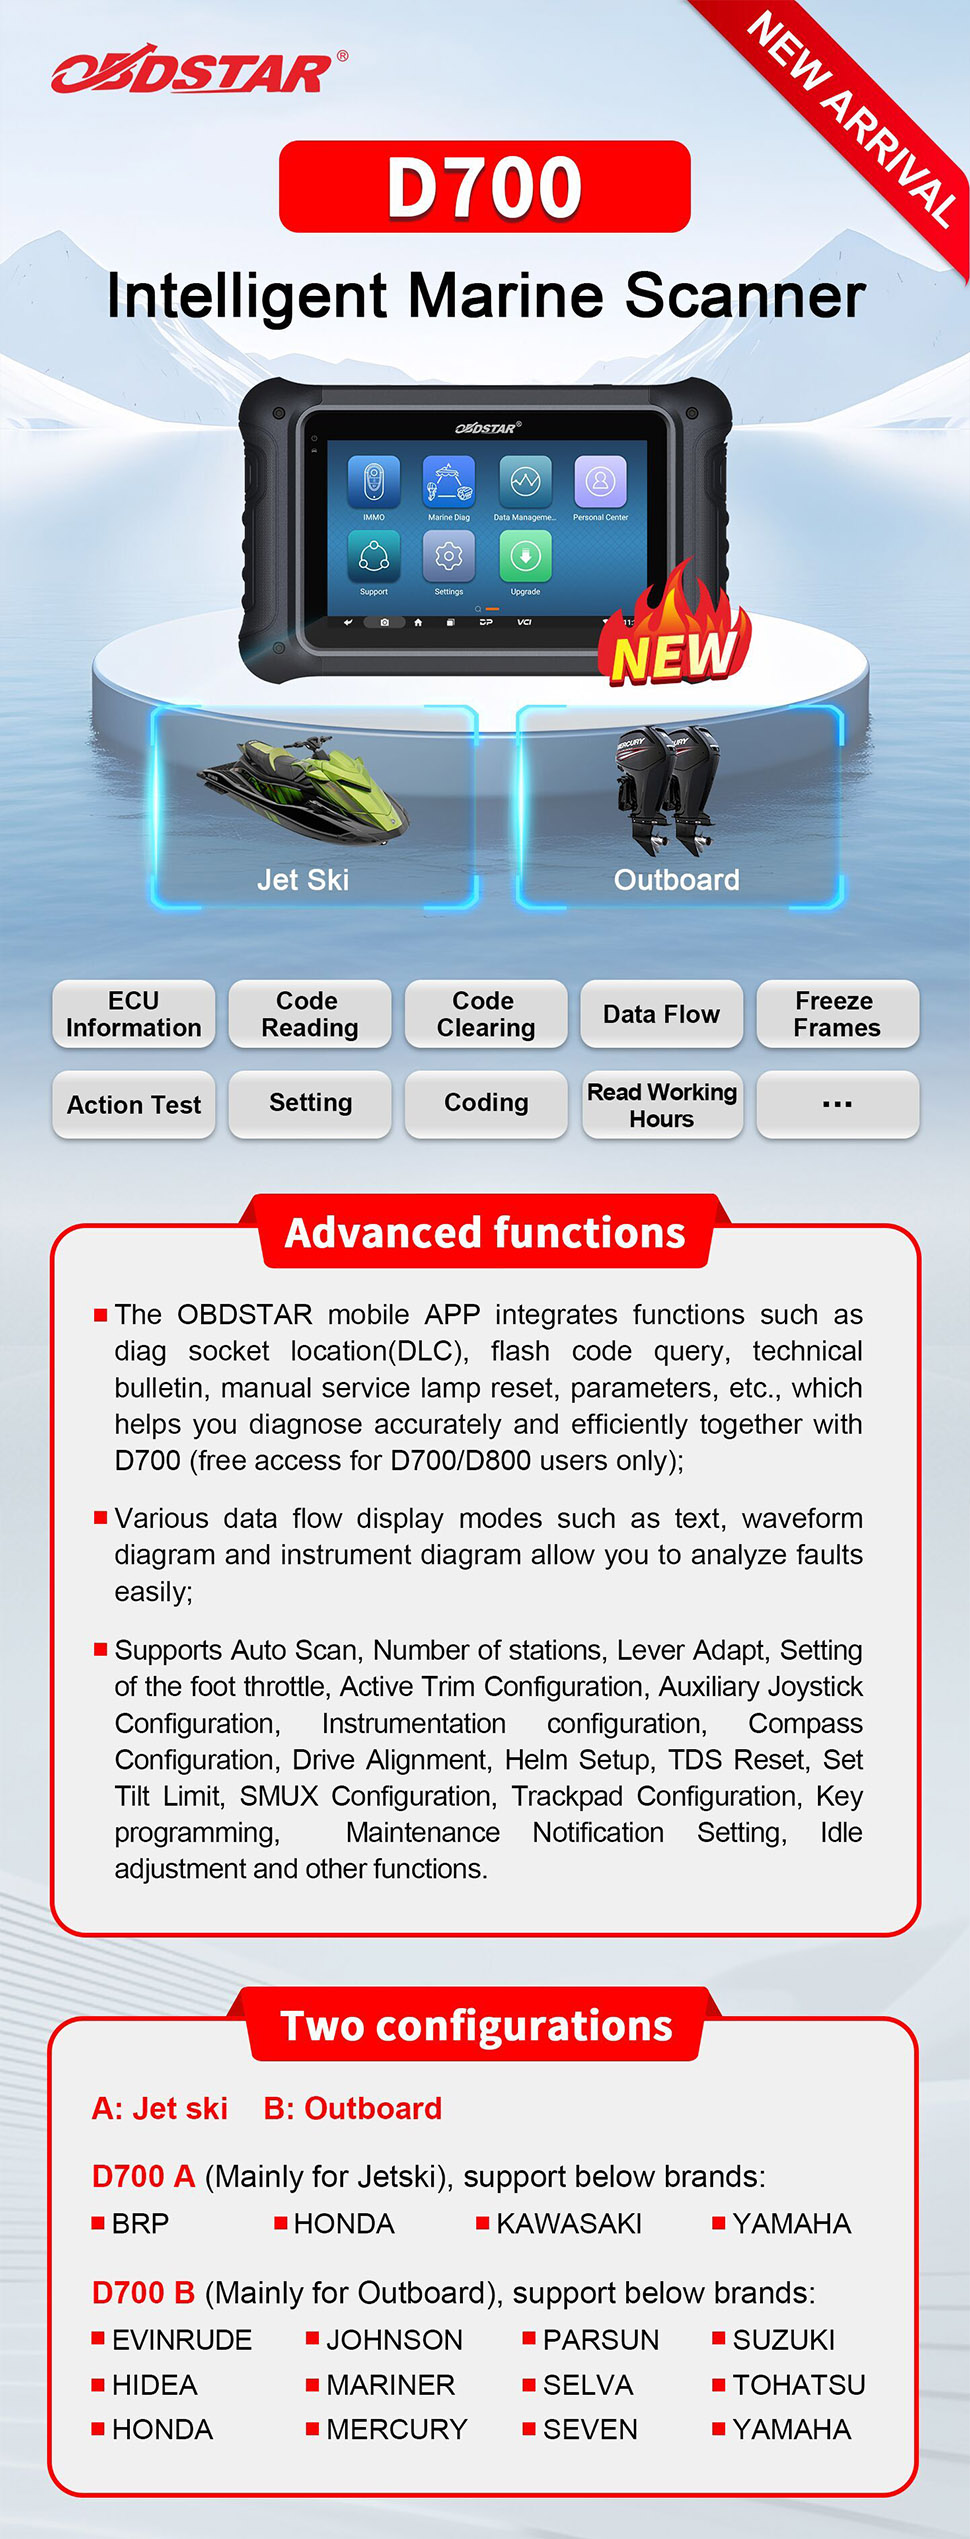 OBDSTAR D700 B for Outboard Intelligent Marine Scanner 